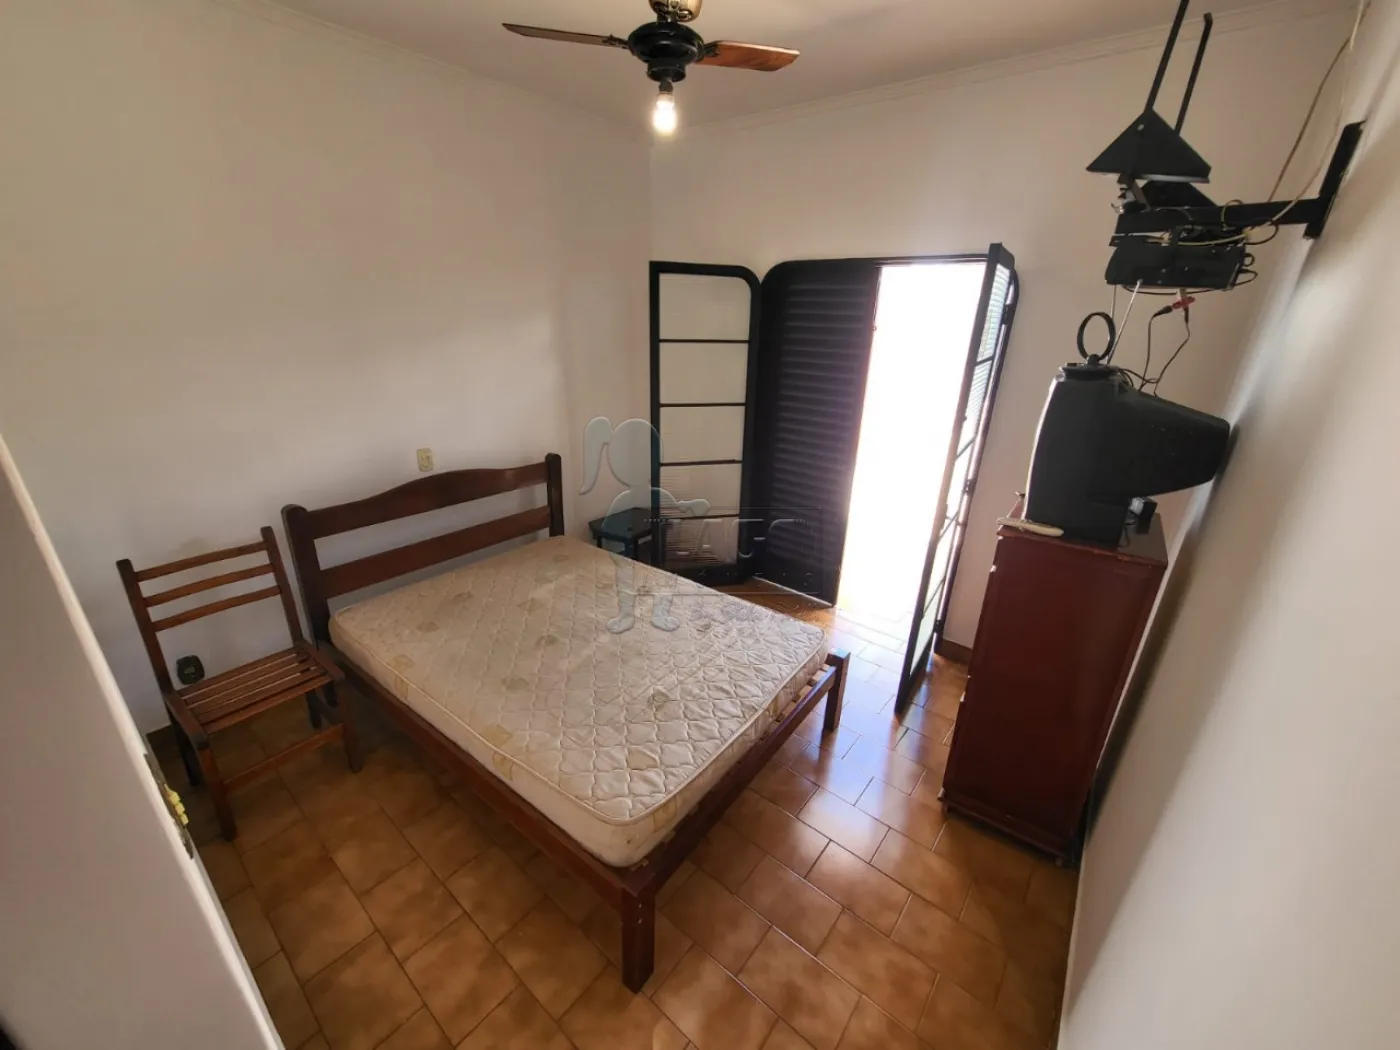 Alugar Casa / Padrão em Ribeirão Preto R$ 4.000,00 - Foto 1